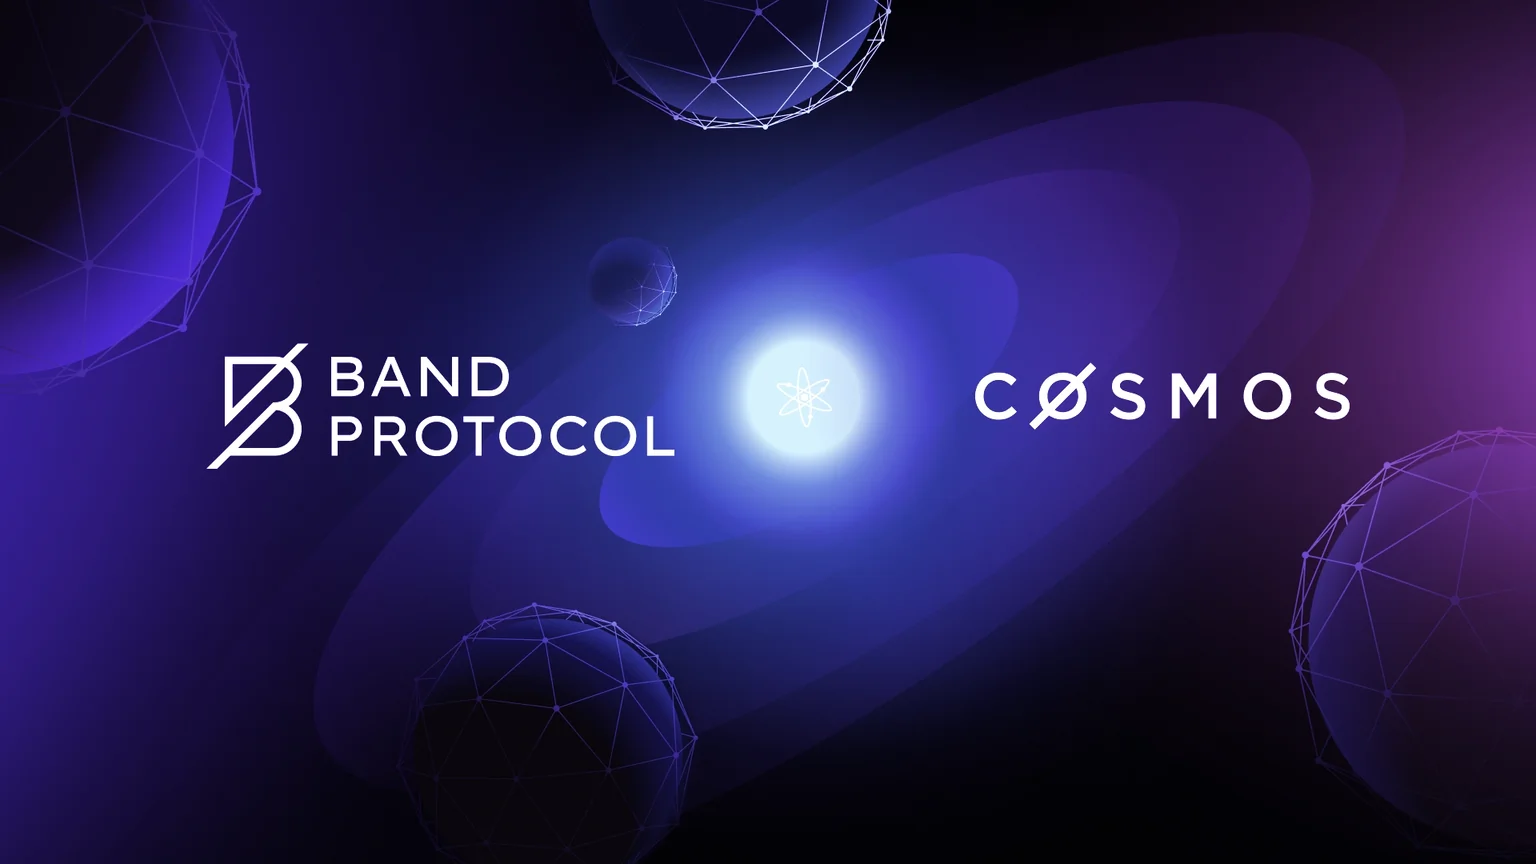 Band Protocol and Cosmos. Image: Band Protocol